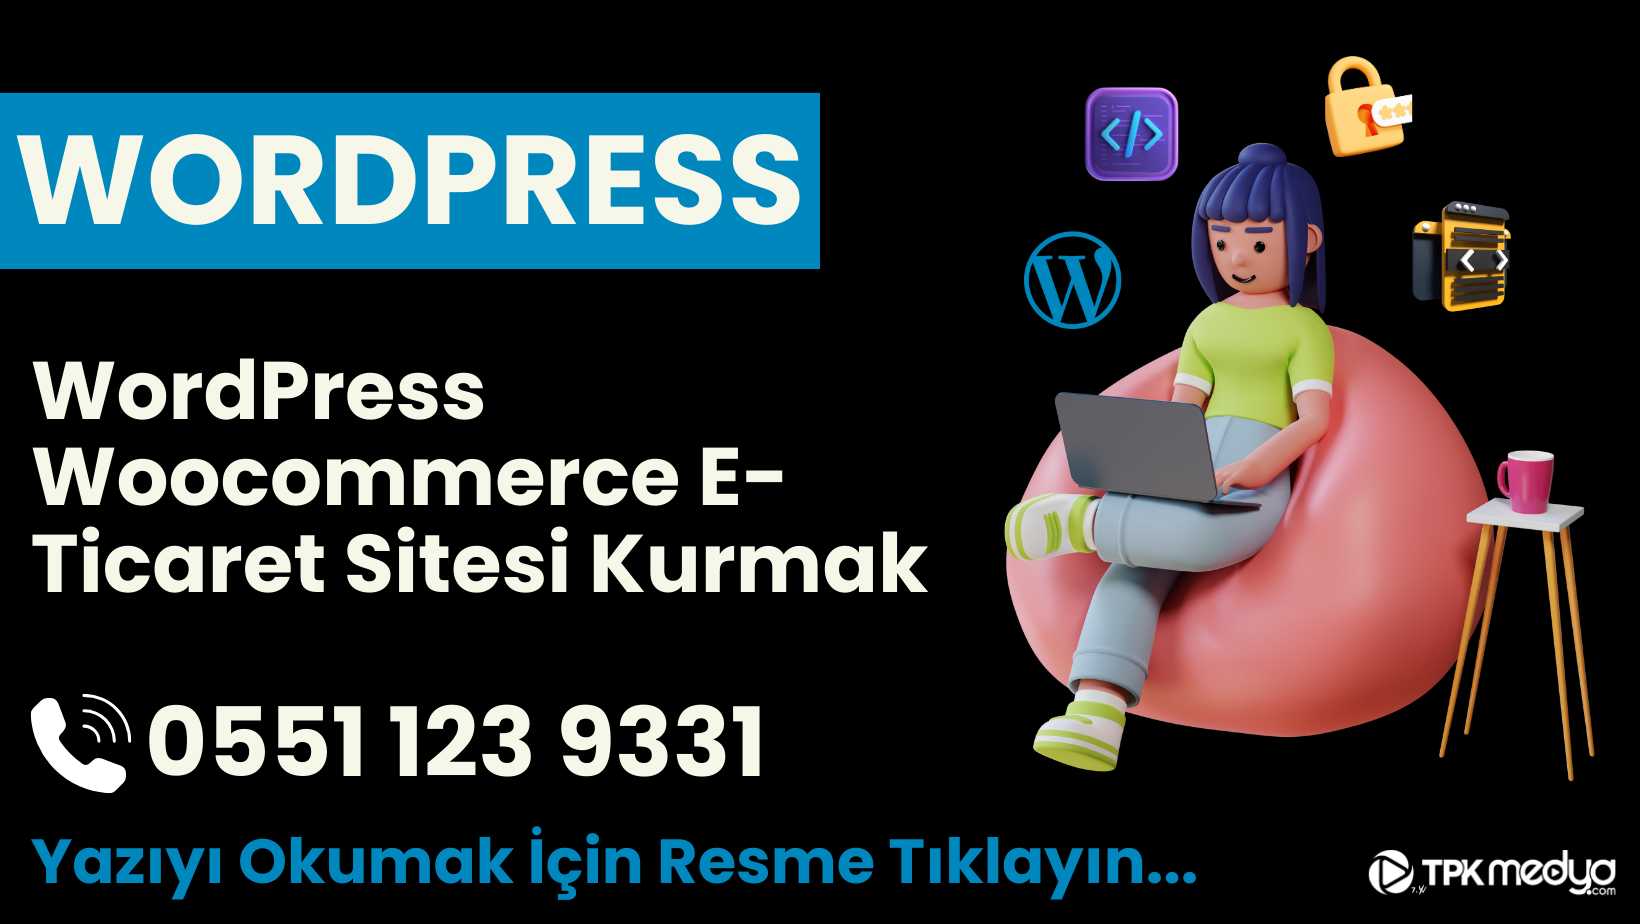 WordPress Woocommerce E-Ticaret Sitesi Kurmak